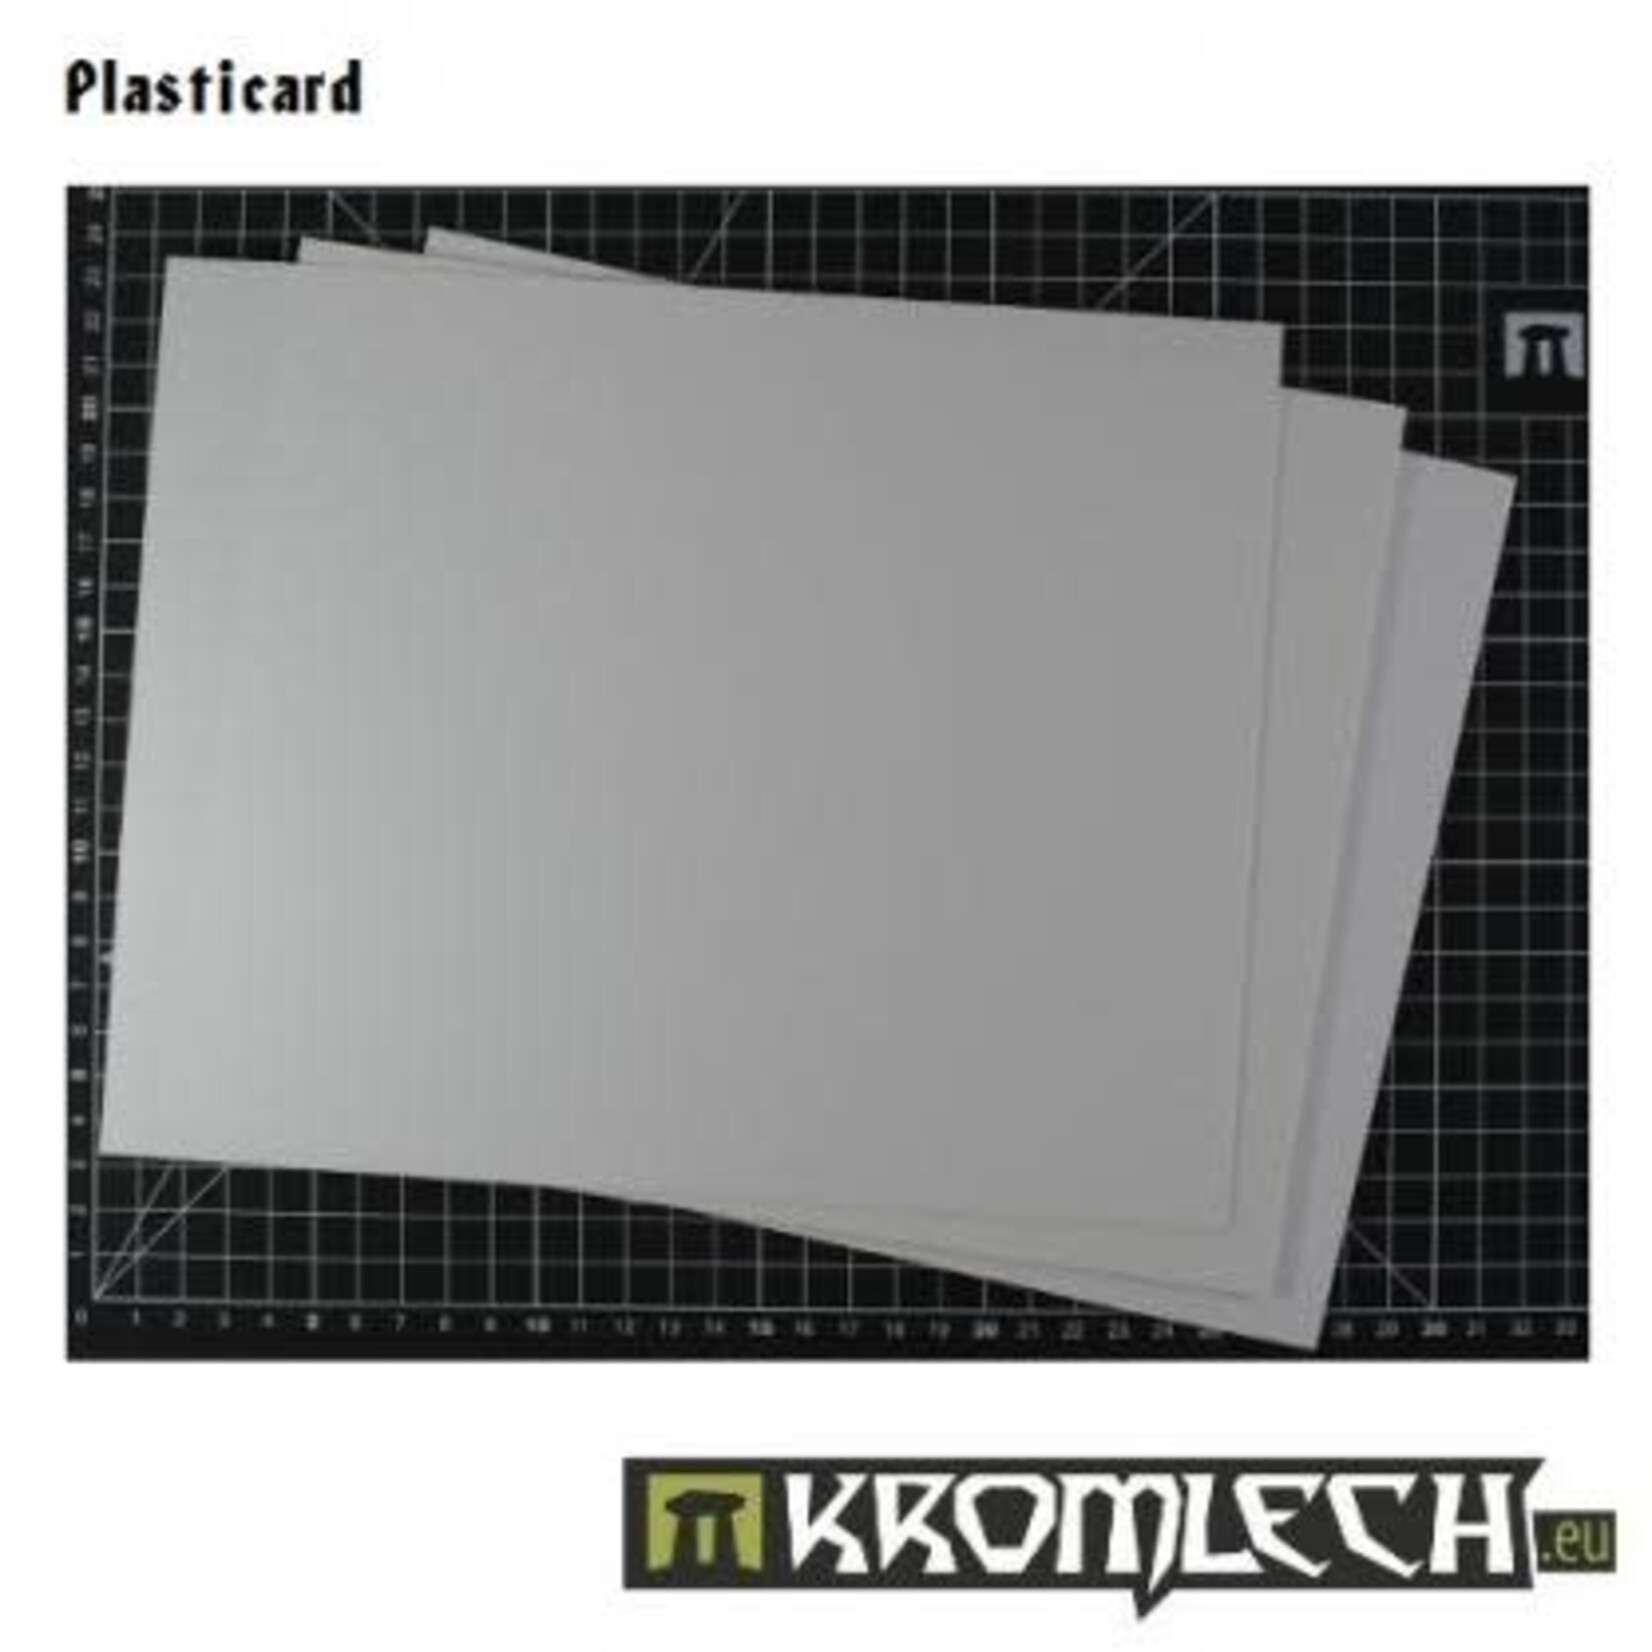 Kromlech Kromlech Plasticard 250 x 200 x 0.75mm Sheets (2) Set